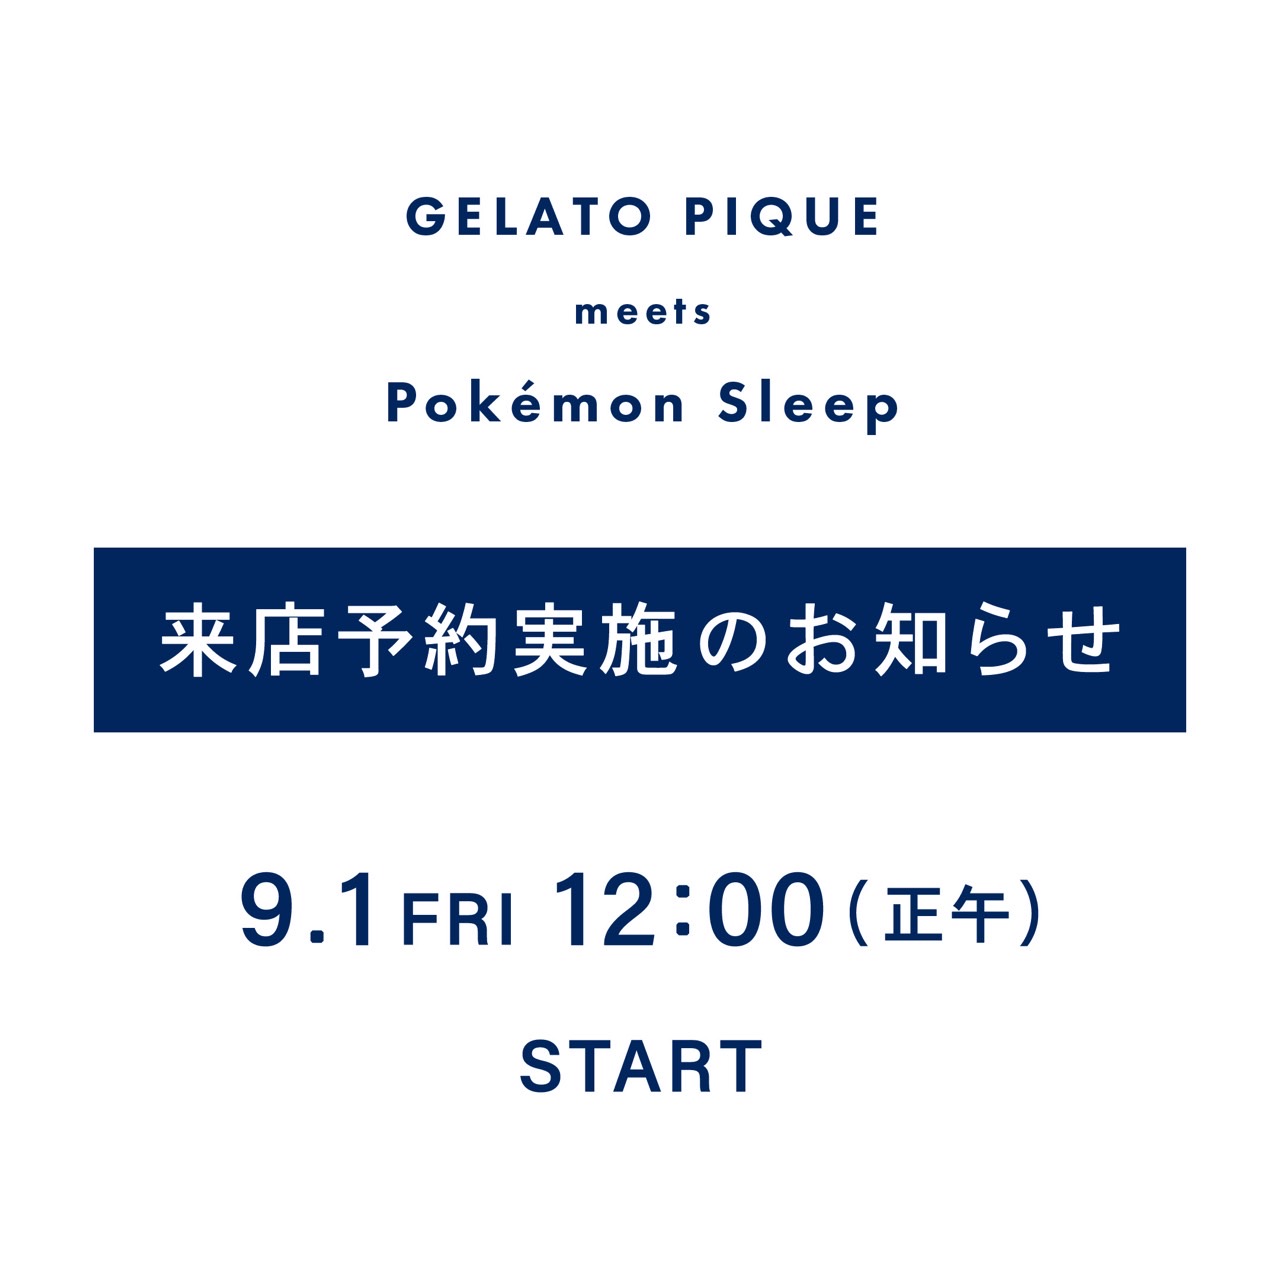 【GELATO PIQUE meets Pokémon Sleep】来店予約実施のお知らせ